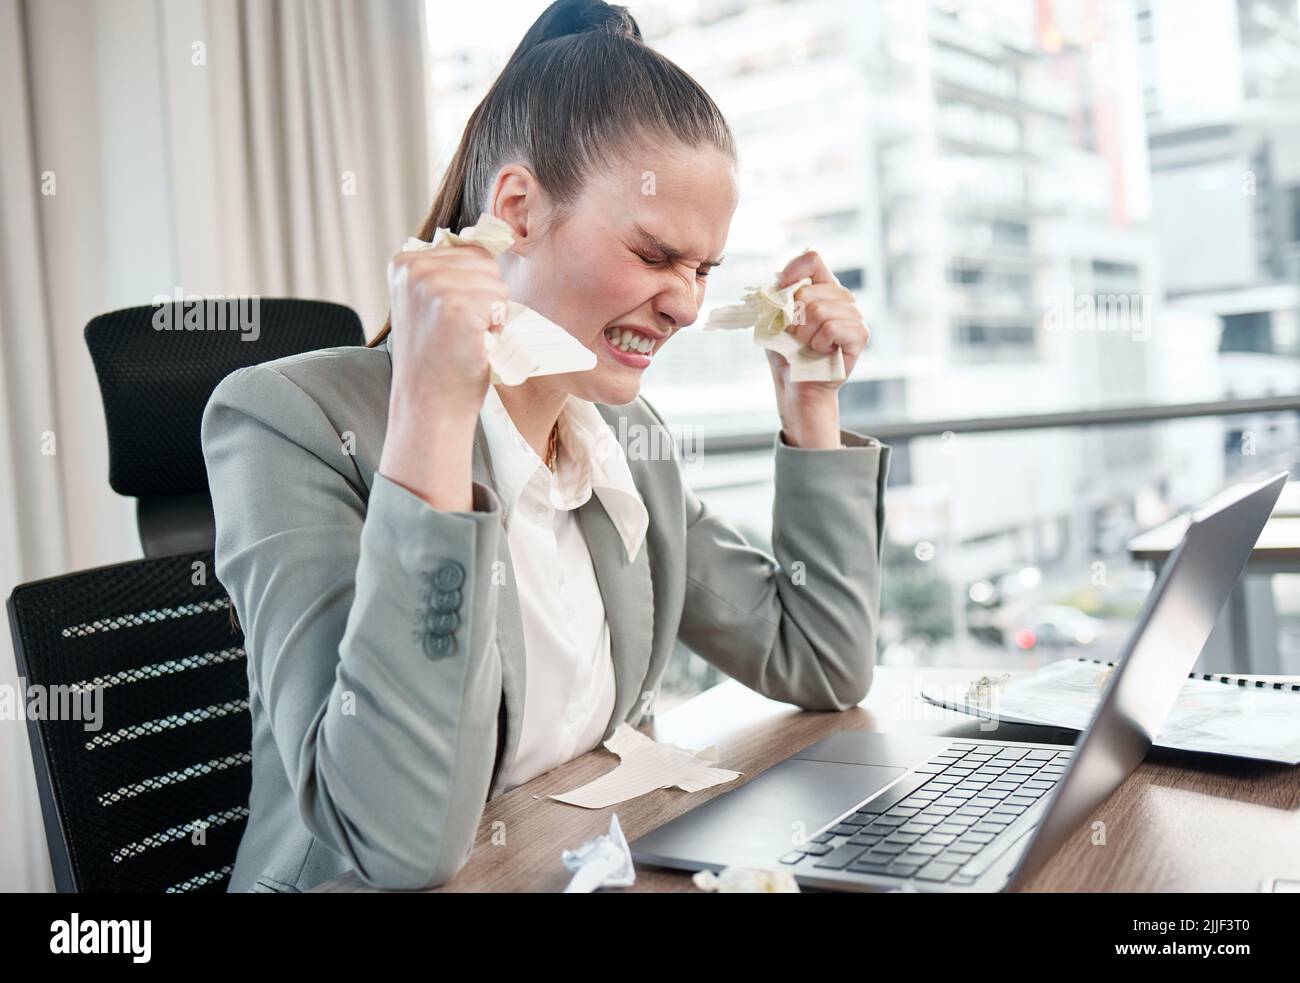 Prendetevi una pausa se siete sopraffatti. Una giovane donna d'affari che guarda molto turbata in un ufficio al lavoro. Foto Stock